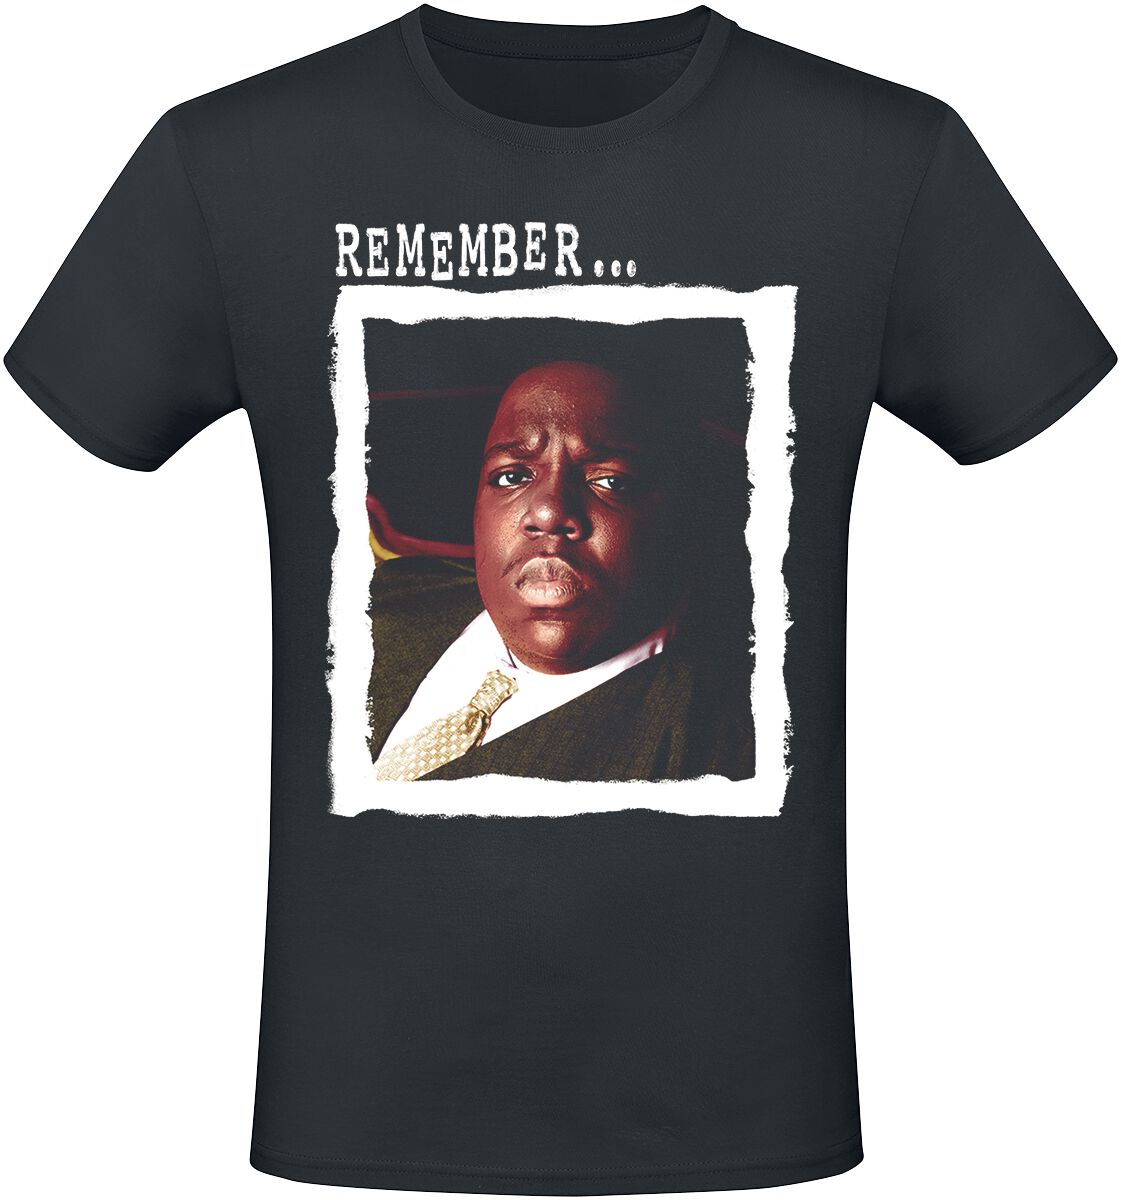 Notorious B.I.G. T-Shirt - Remember - S bis XXL - für Männer - Größe L - schwarz  - Lizenziertes Merchandise!